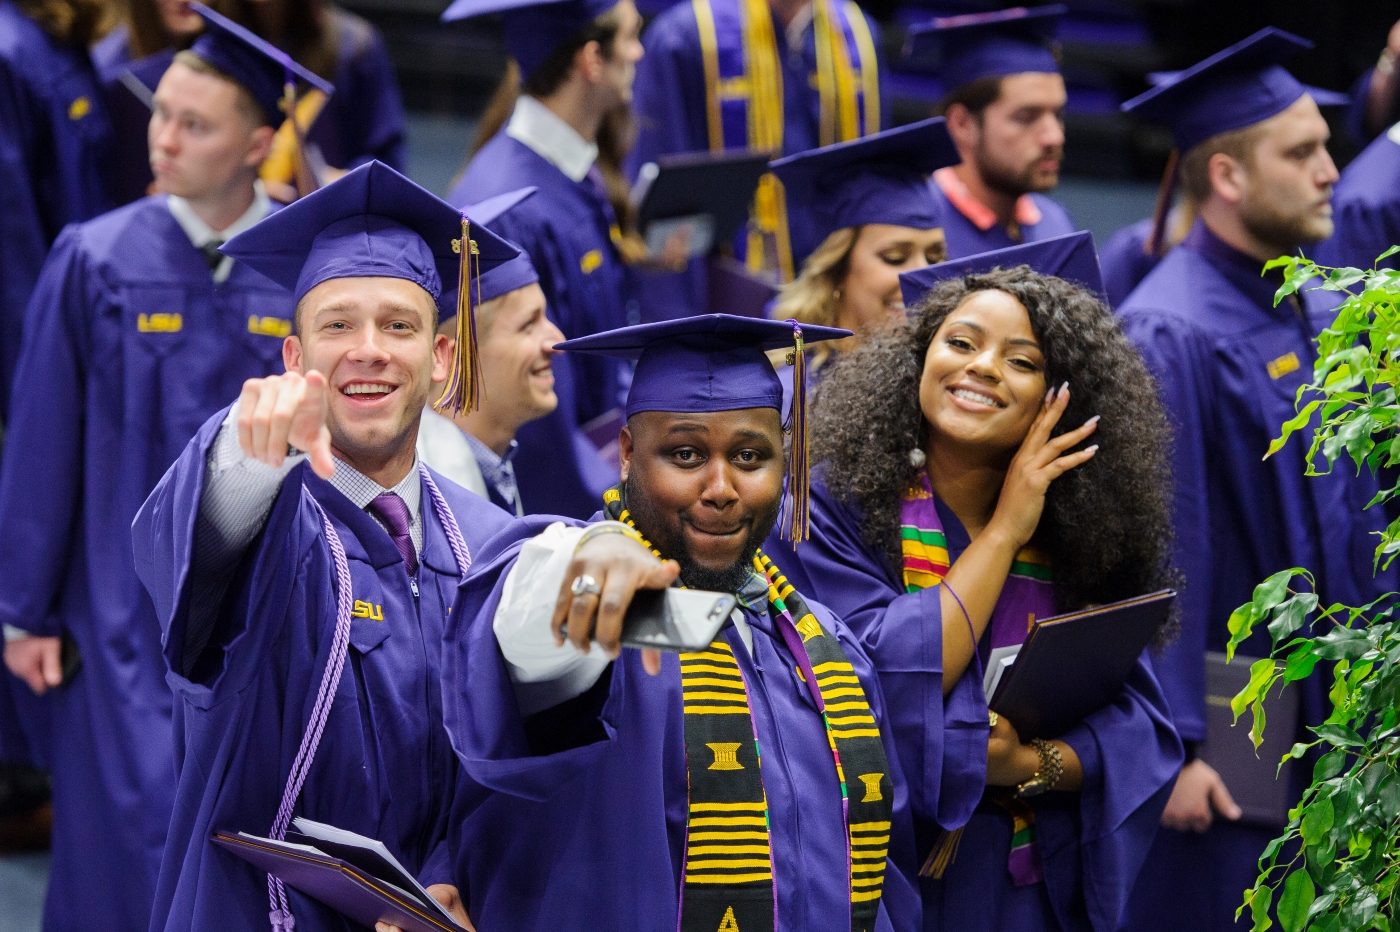 Graduates smiling and pointing at camera